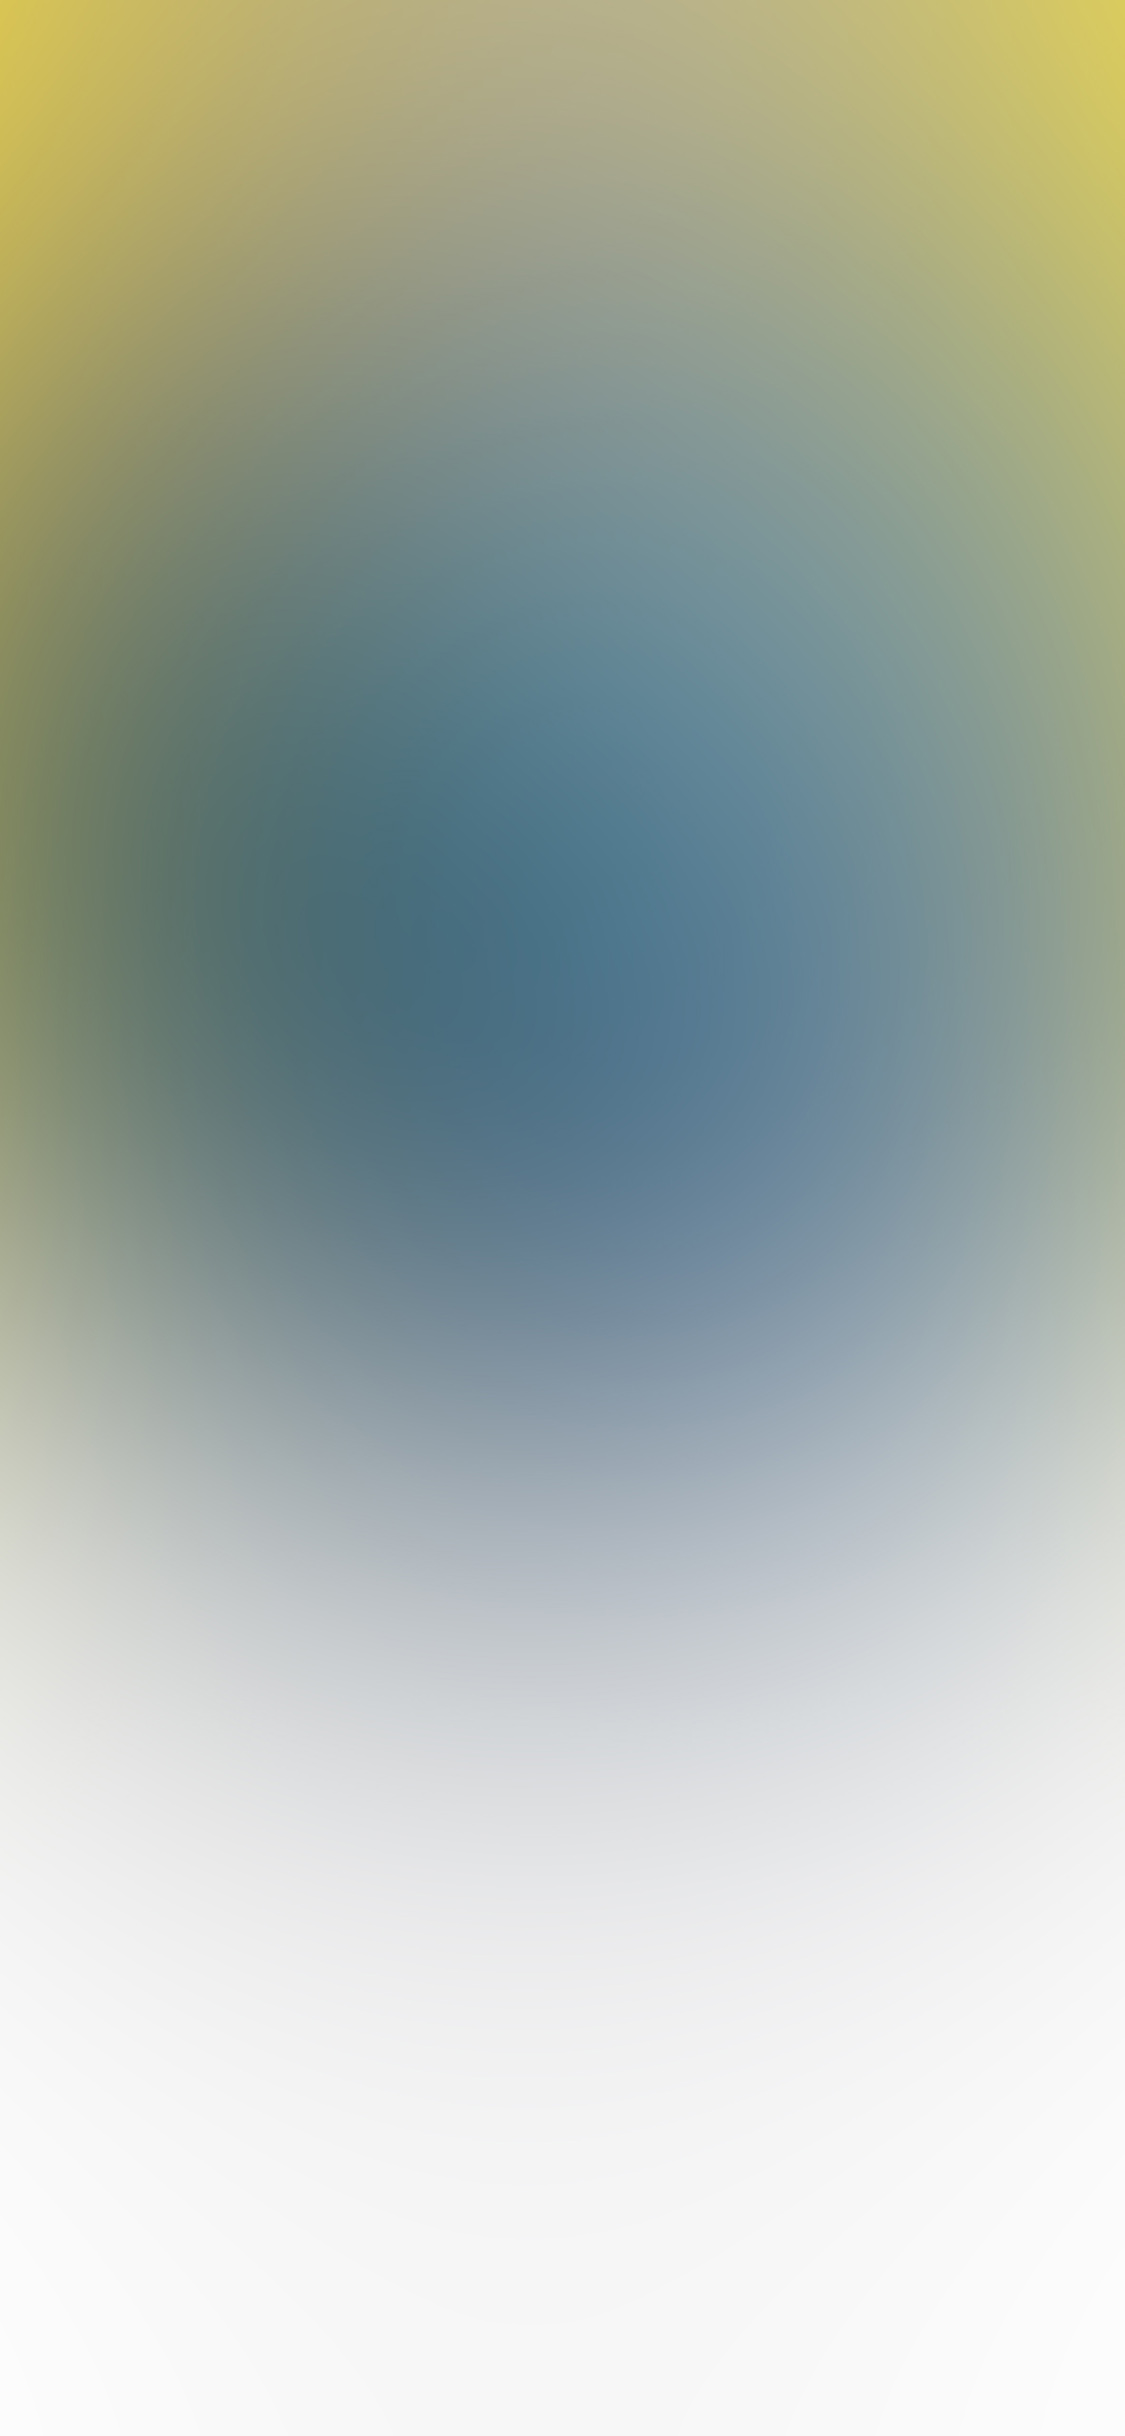 Sf82 Kakao Talk Bye Gradation Blur - Sky , HD Wallpaper & Backgrounds